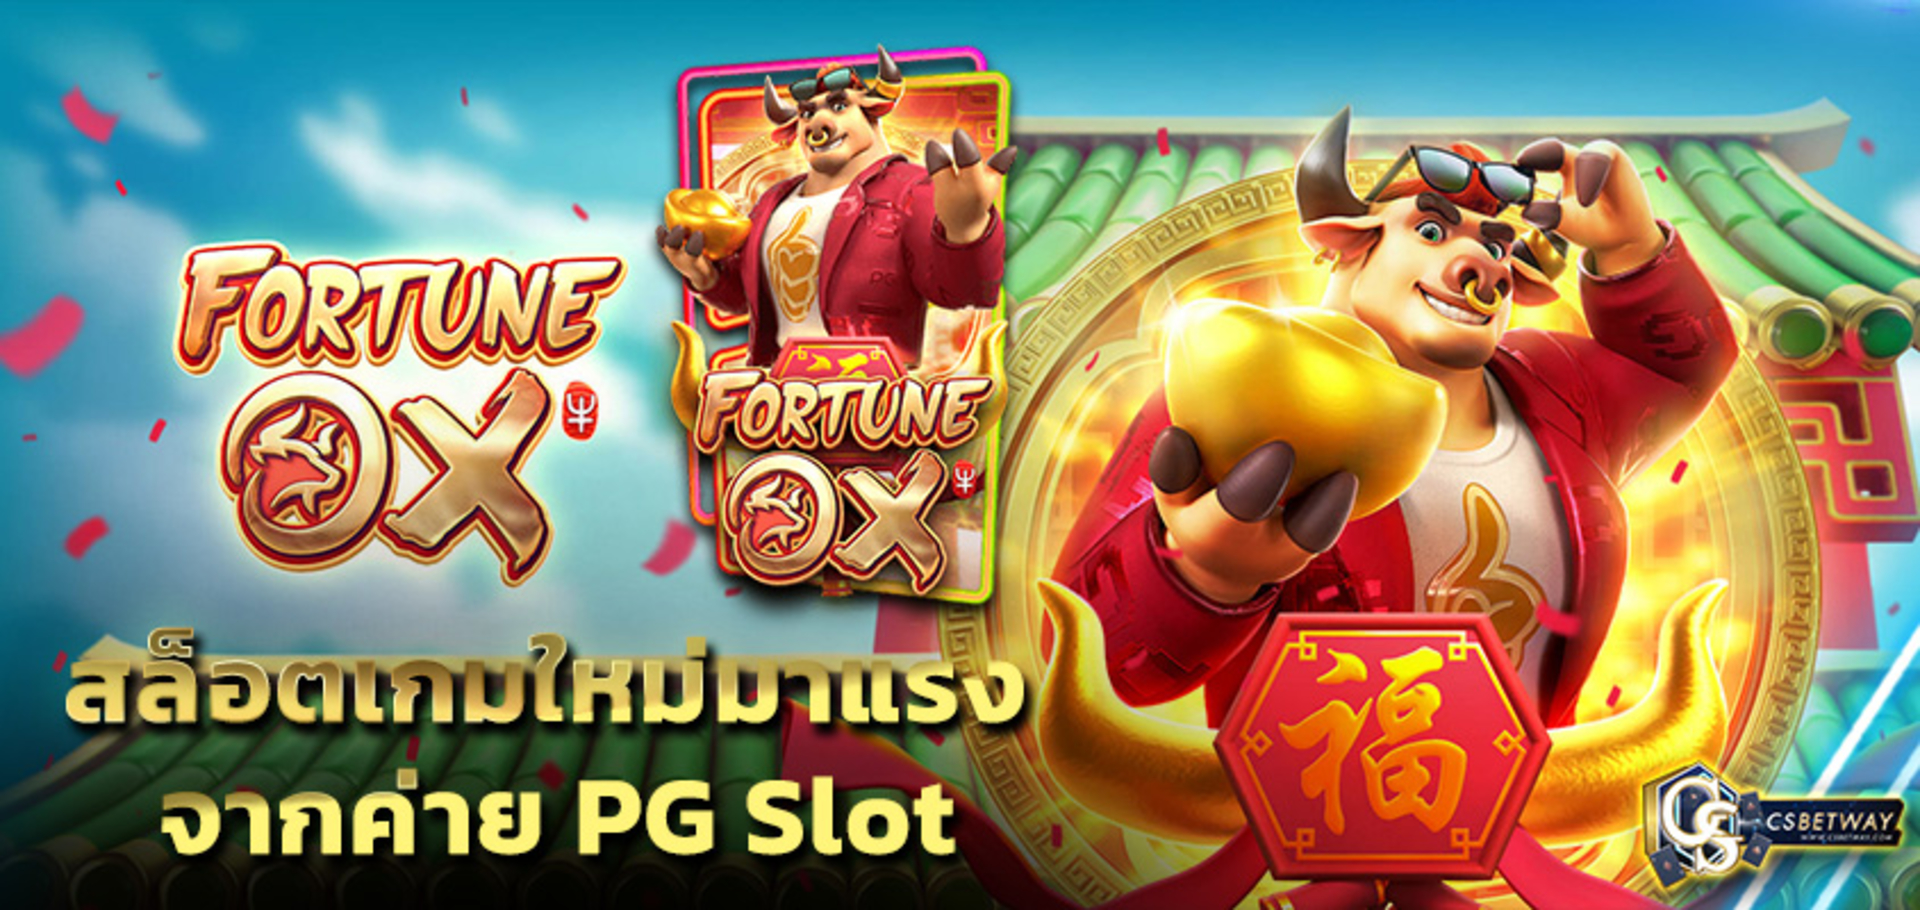 เกมสล็อตออนไลน์ Fortune Ox สล็อตเกมใหม่มาแรง จากค่าย PG Slot สล็อตแตกง่าย ได้เงินจริง pgสล็อต พีจีสล็อต